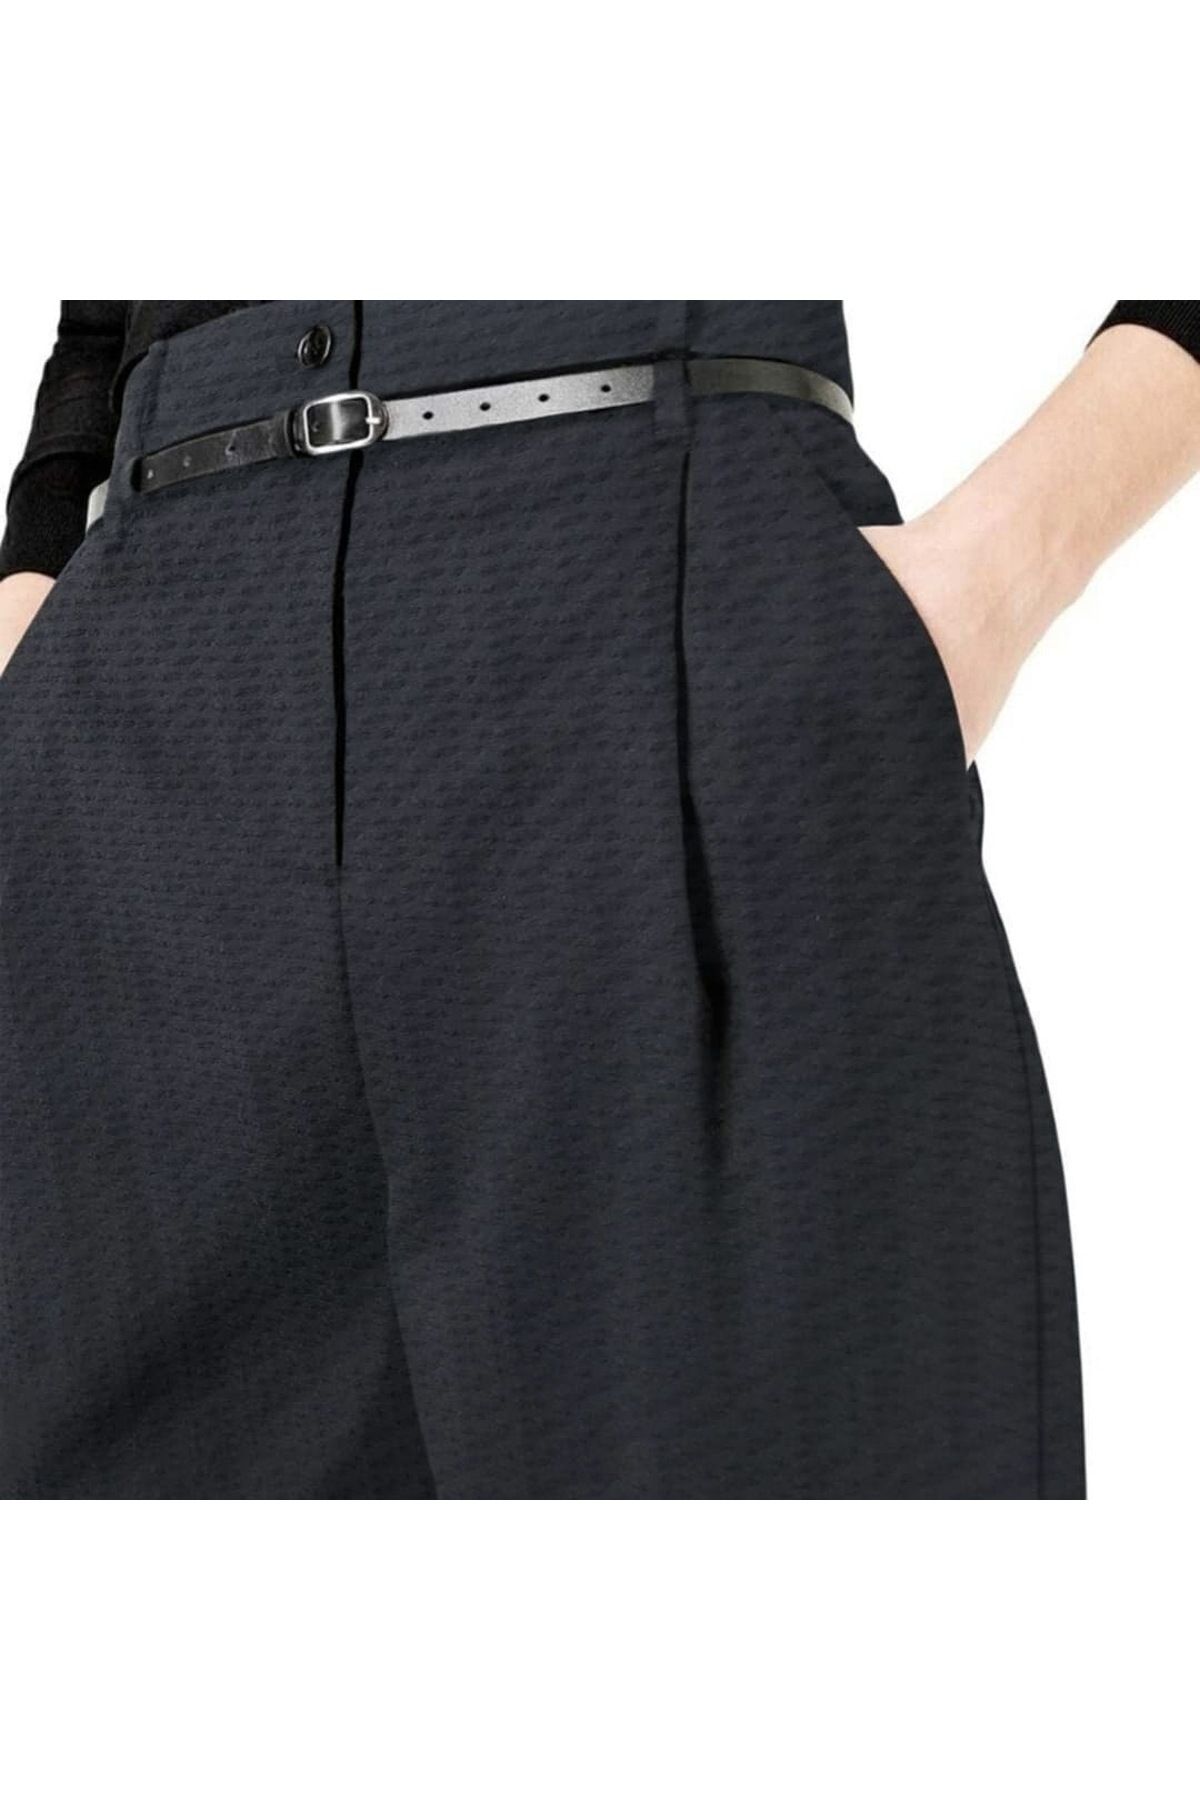 Sheen Dmr Kadın 4 Mevsim Giyilebilen Yünlü Likralı Yüksek Bel Bol Paça Haute Couture Siyah Bürümcük Pantolon